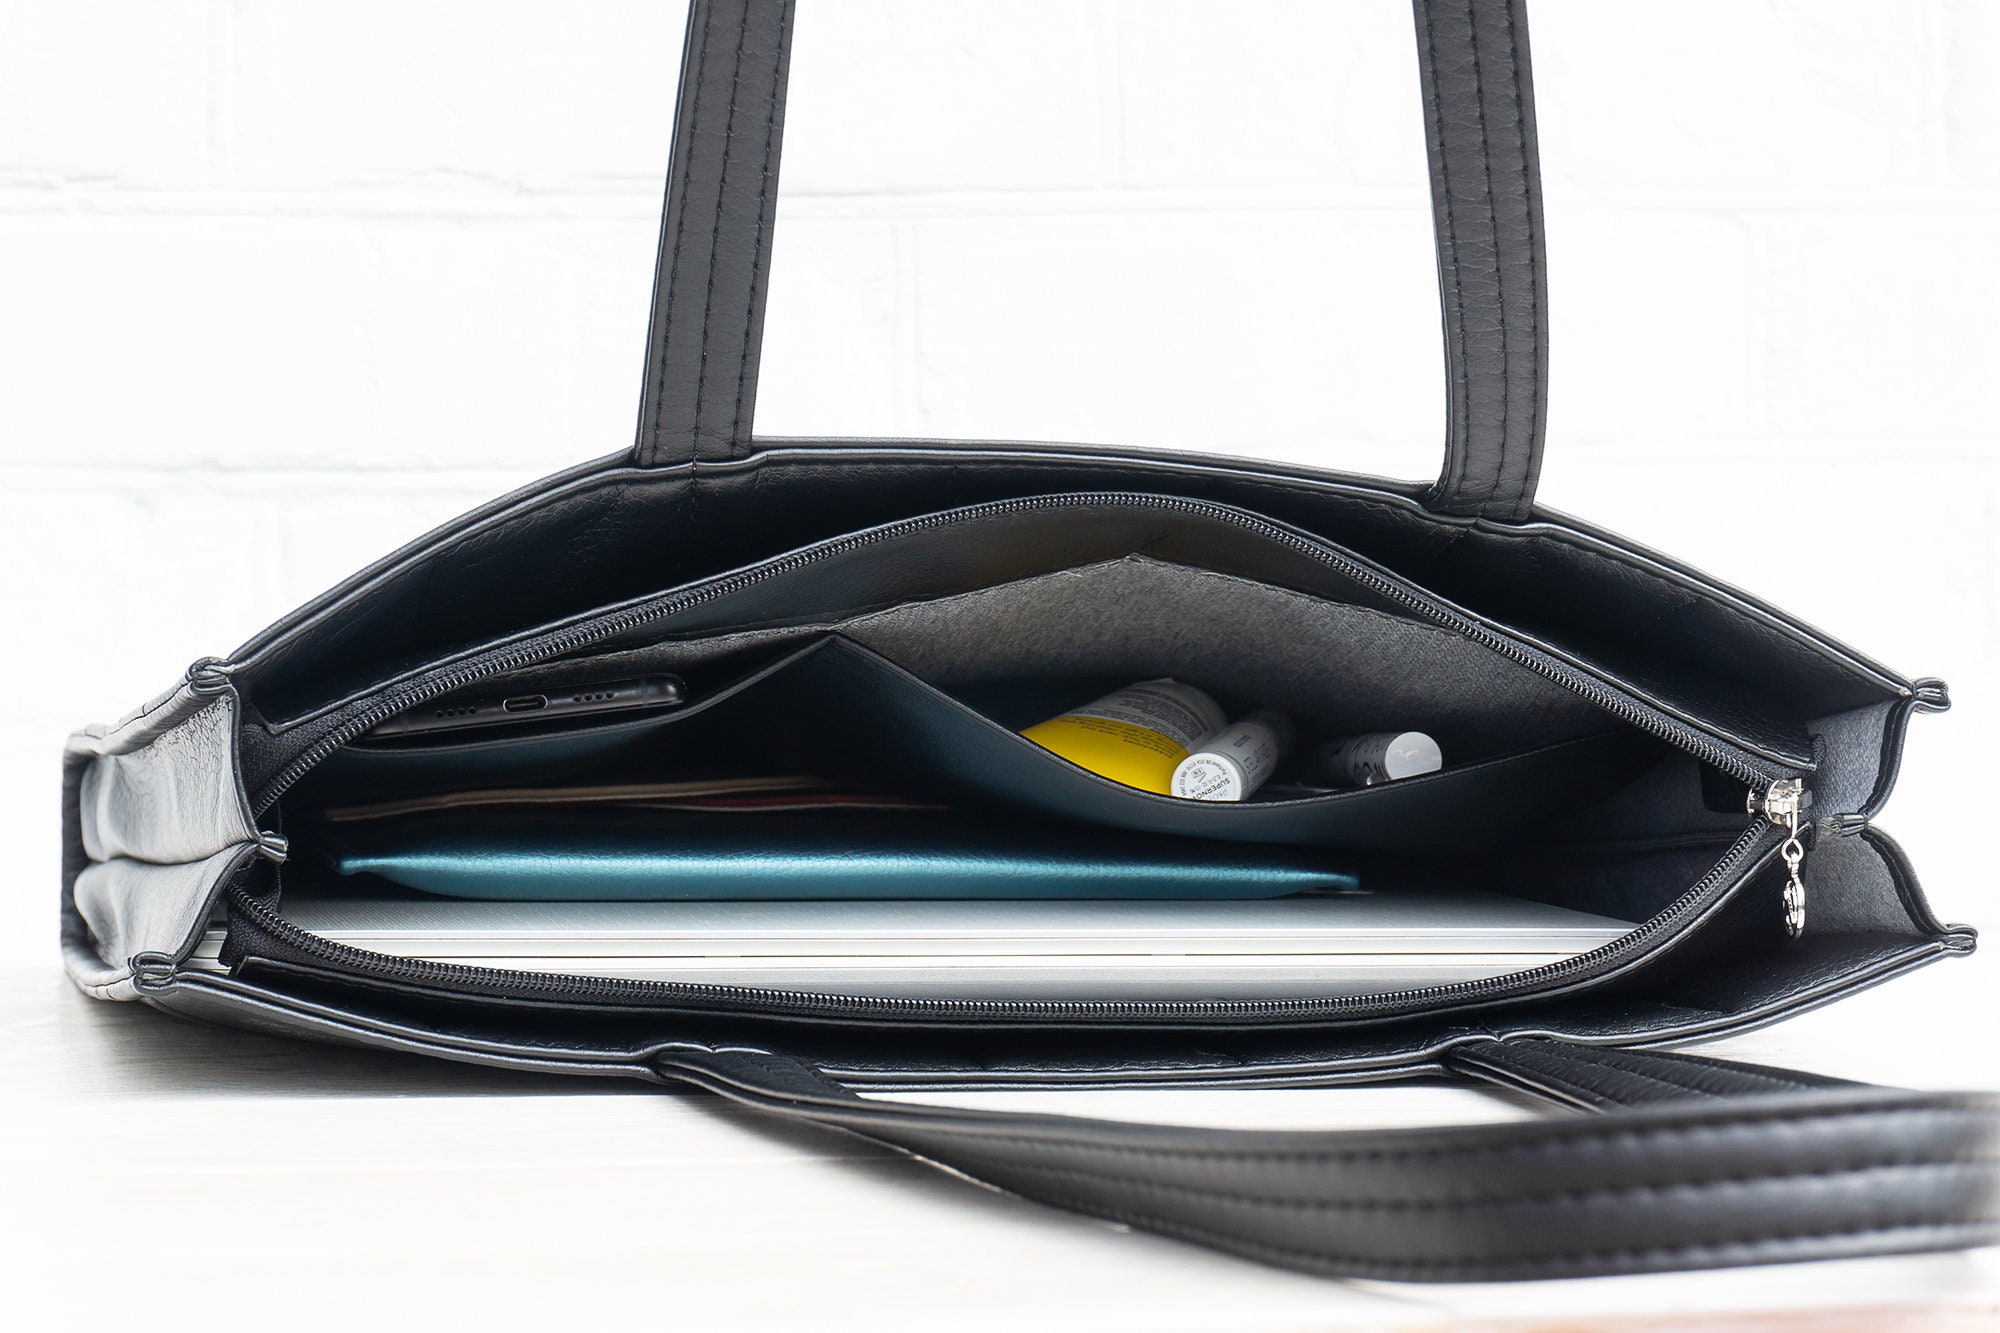 HANDSHAKE Vegan Leather 15.6 InchLaptop Bag Casual Look Trendy